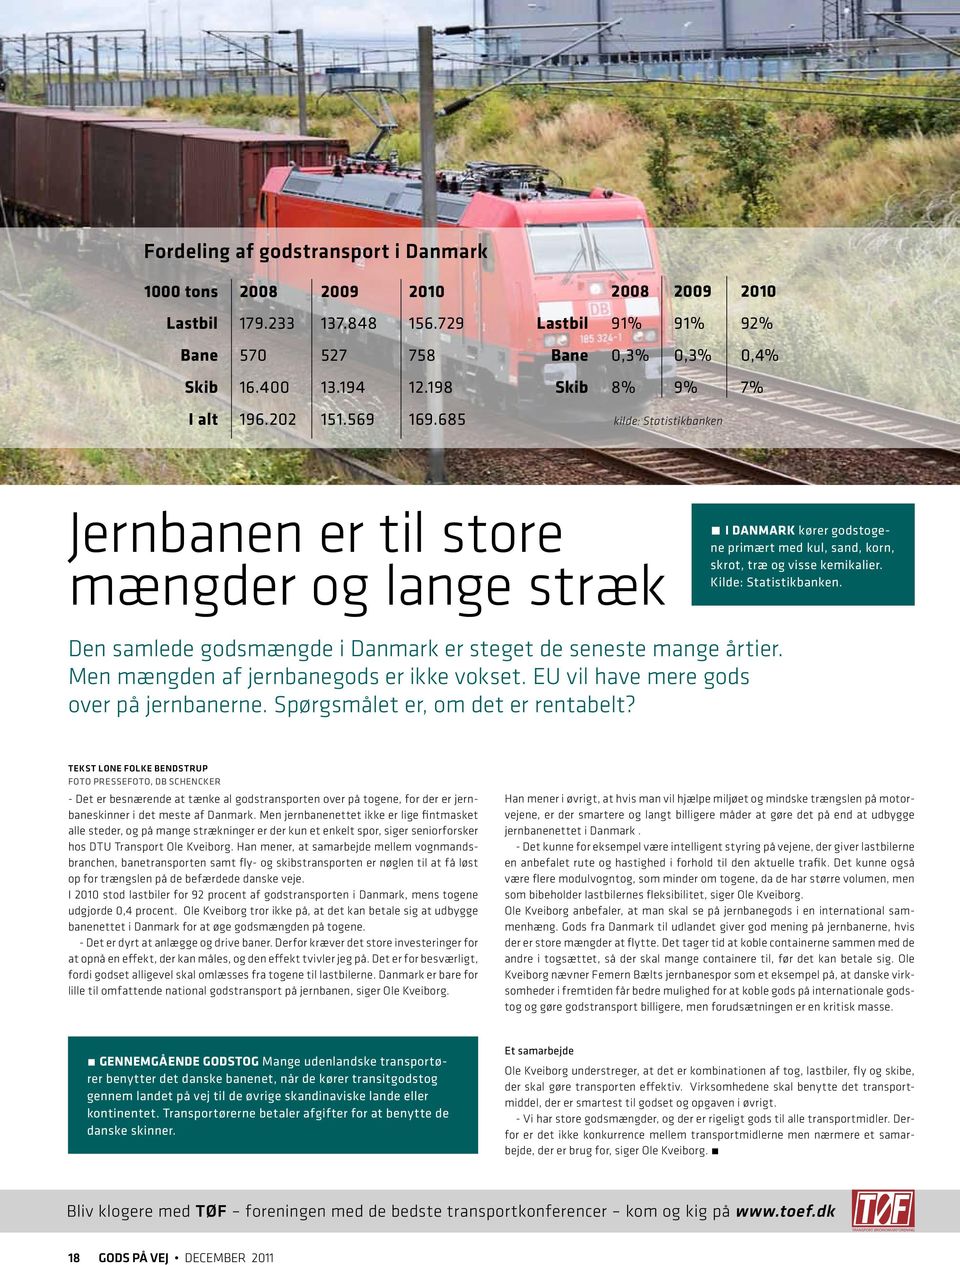 skrot, træ og visse kemikalier. Kilde: Statistikbanken. Den samlede godsmængde i Danmark er steget de seneste mange årtier. Men mængden af jernbanegods er ikke vokset.